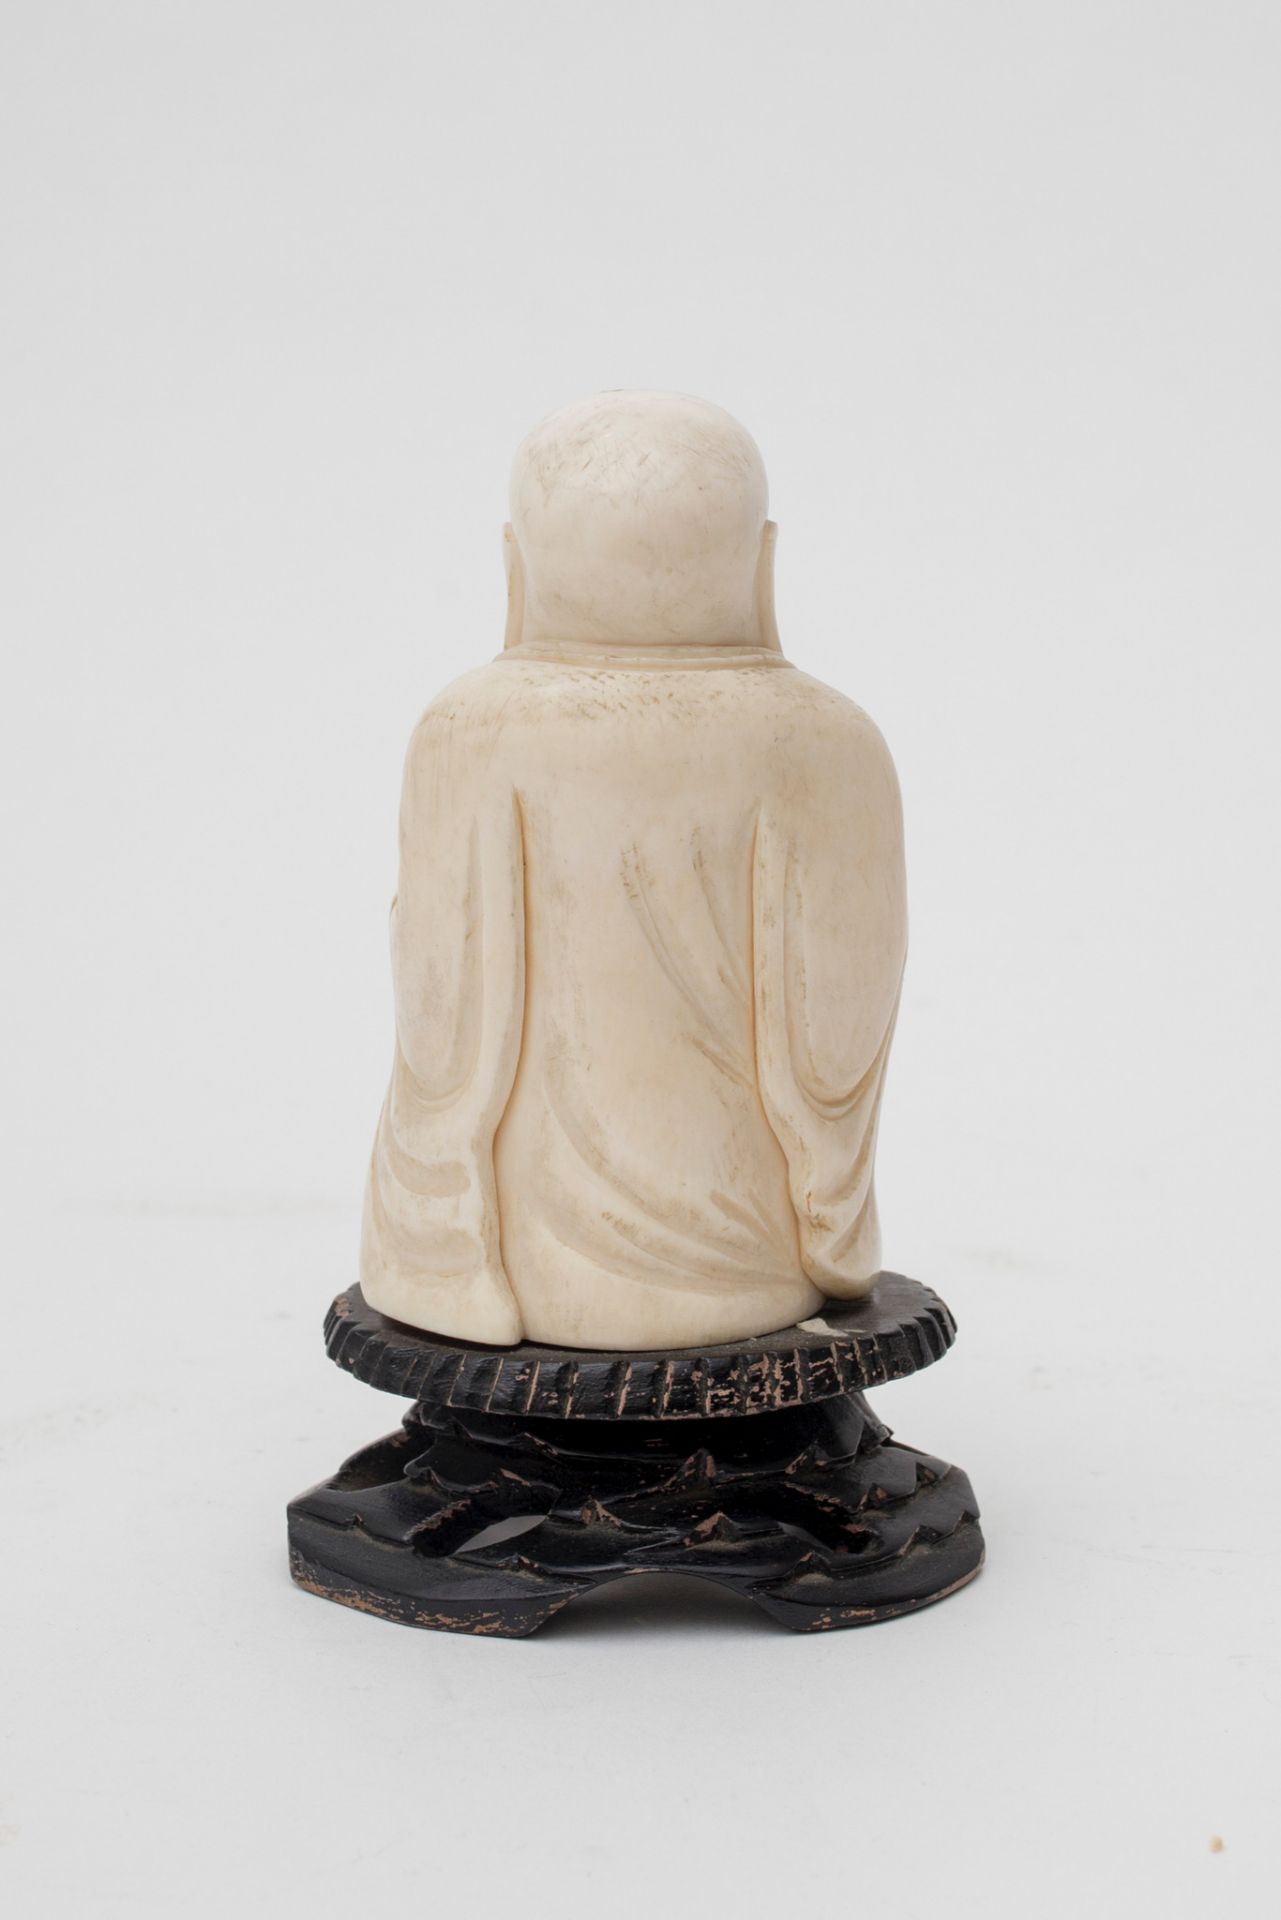 Chine - Budaï d'ivoire - Fixé sur socle de bois. Fin XIXe - début XXe. - H 14 [...] - Image 4 of 8